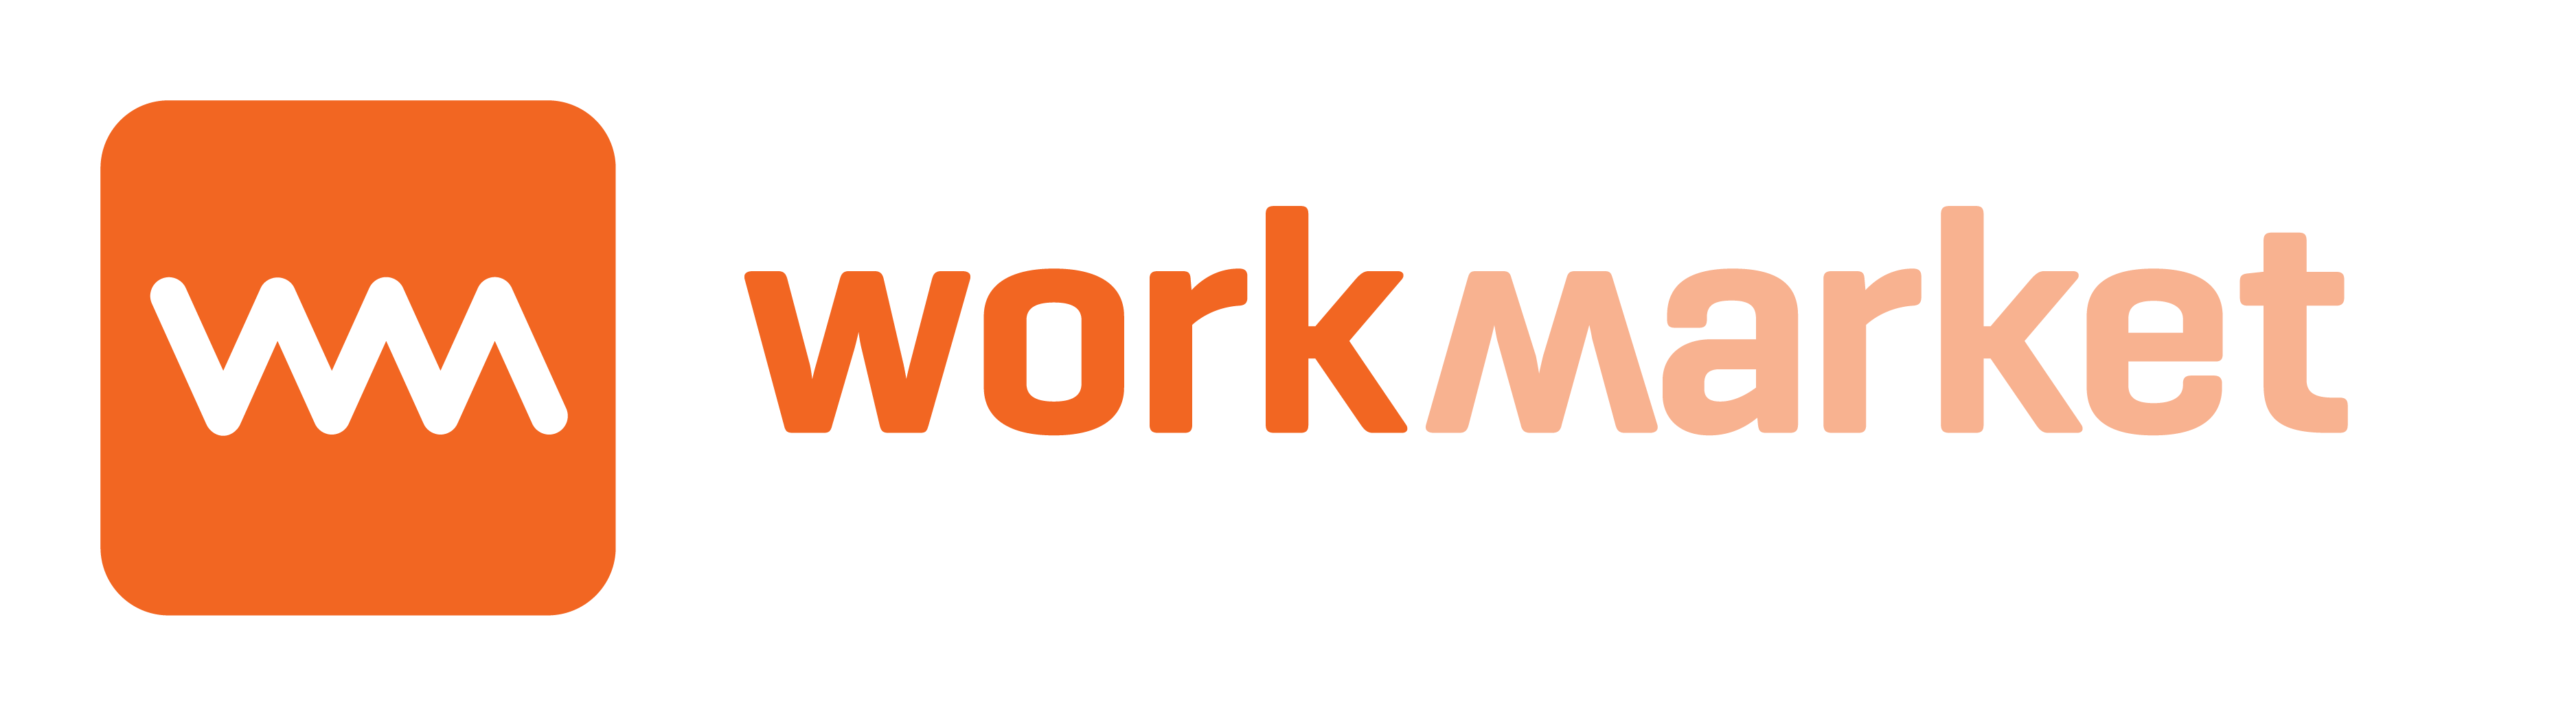 WorkMarket Completes